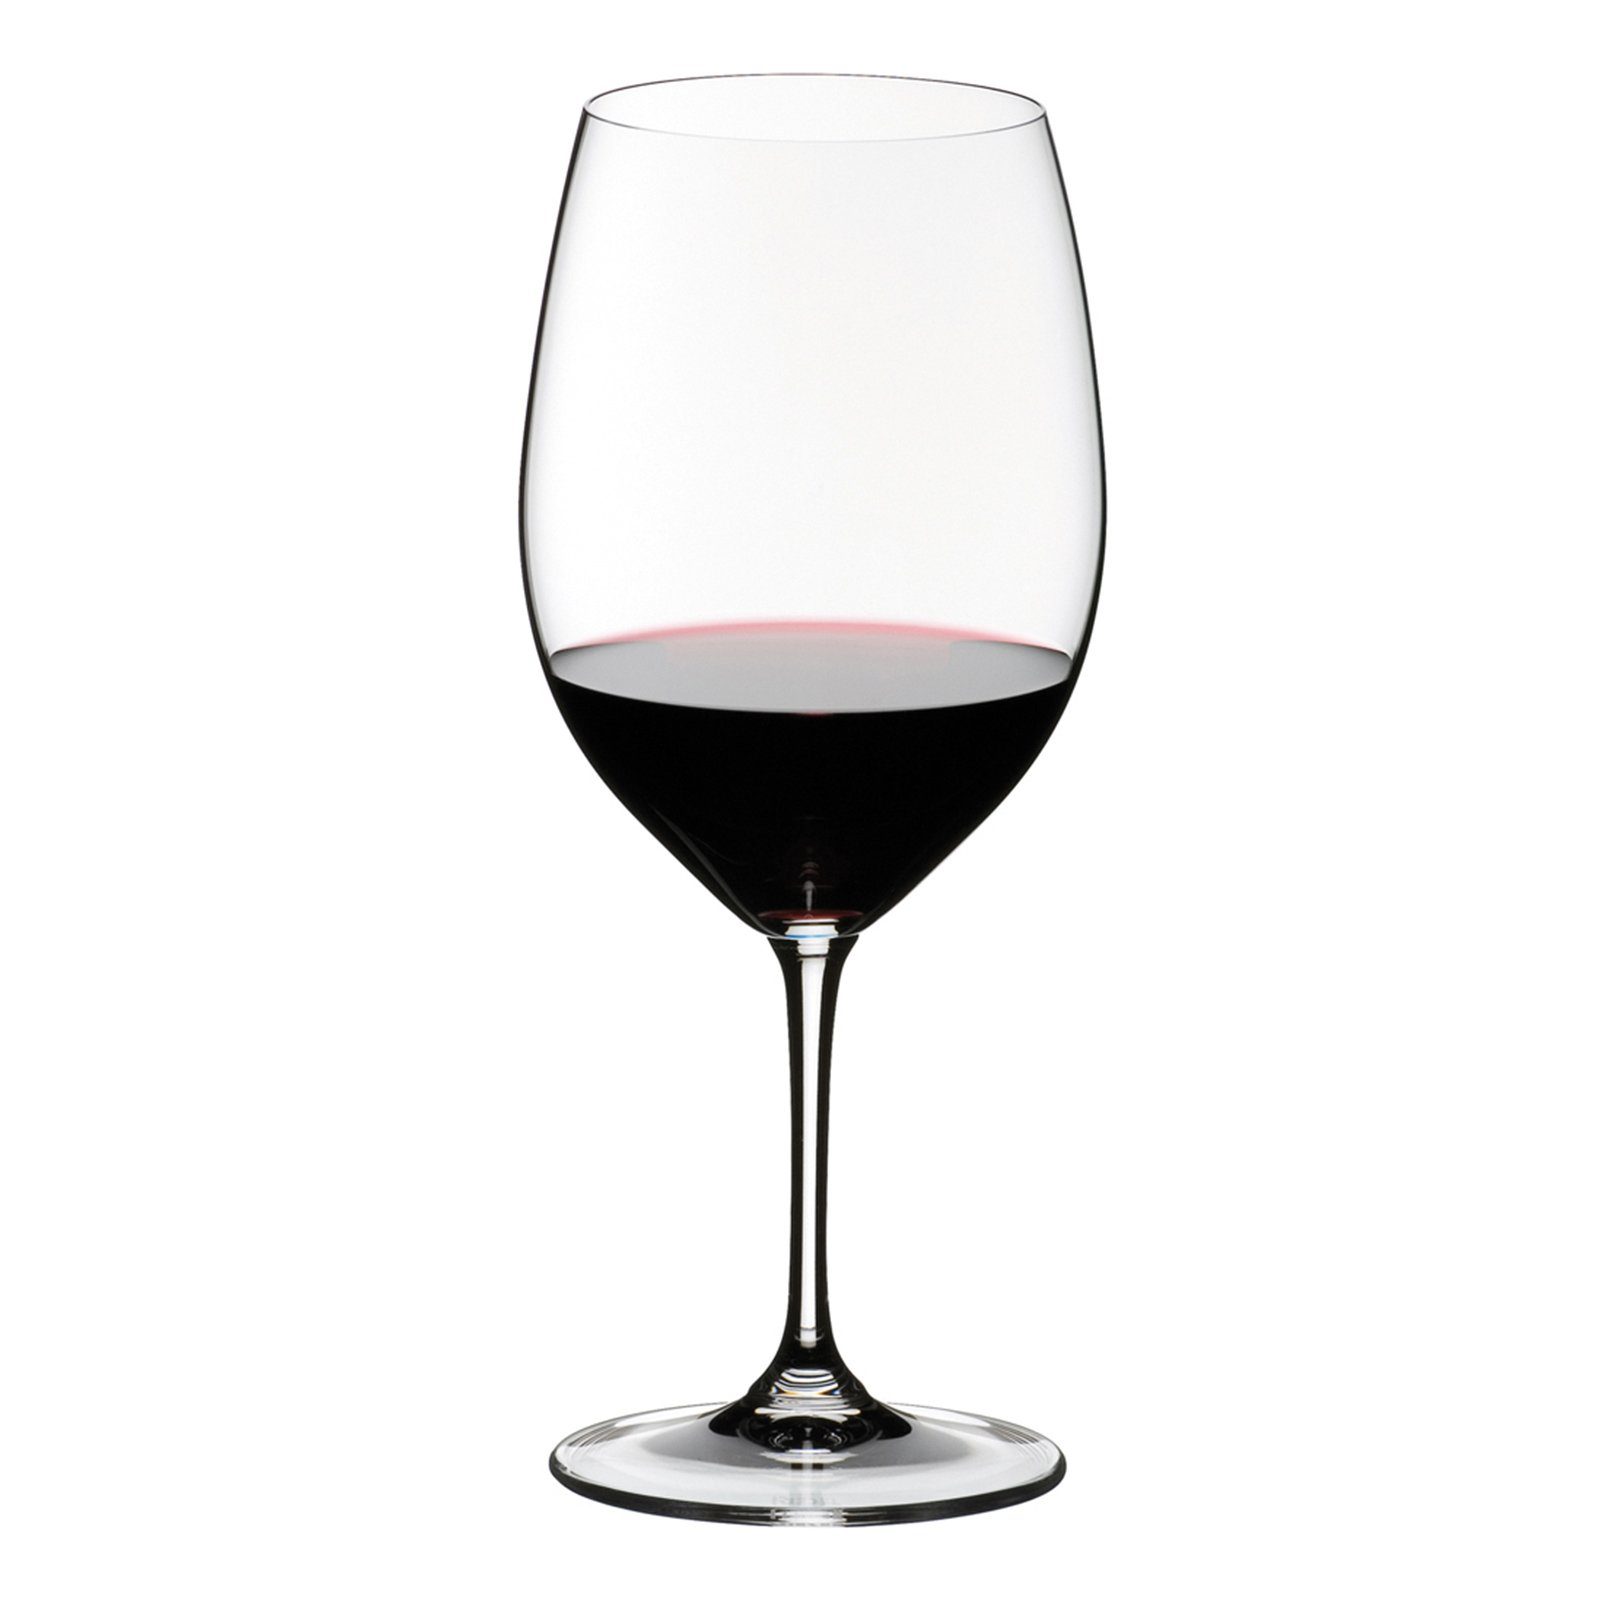 Cabernet Sauvignon/Merlot Glas (Bordeaux), Kristallglas Riedel Glas Vinum RIEDEL